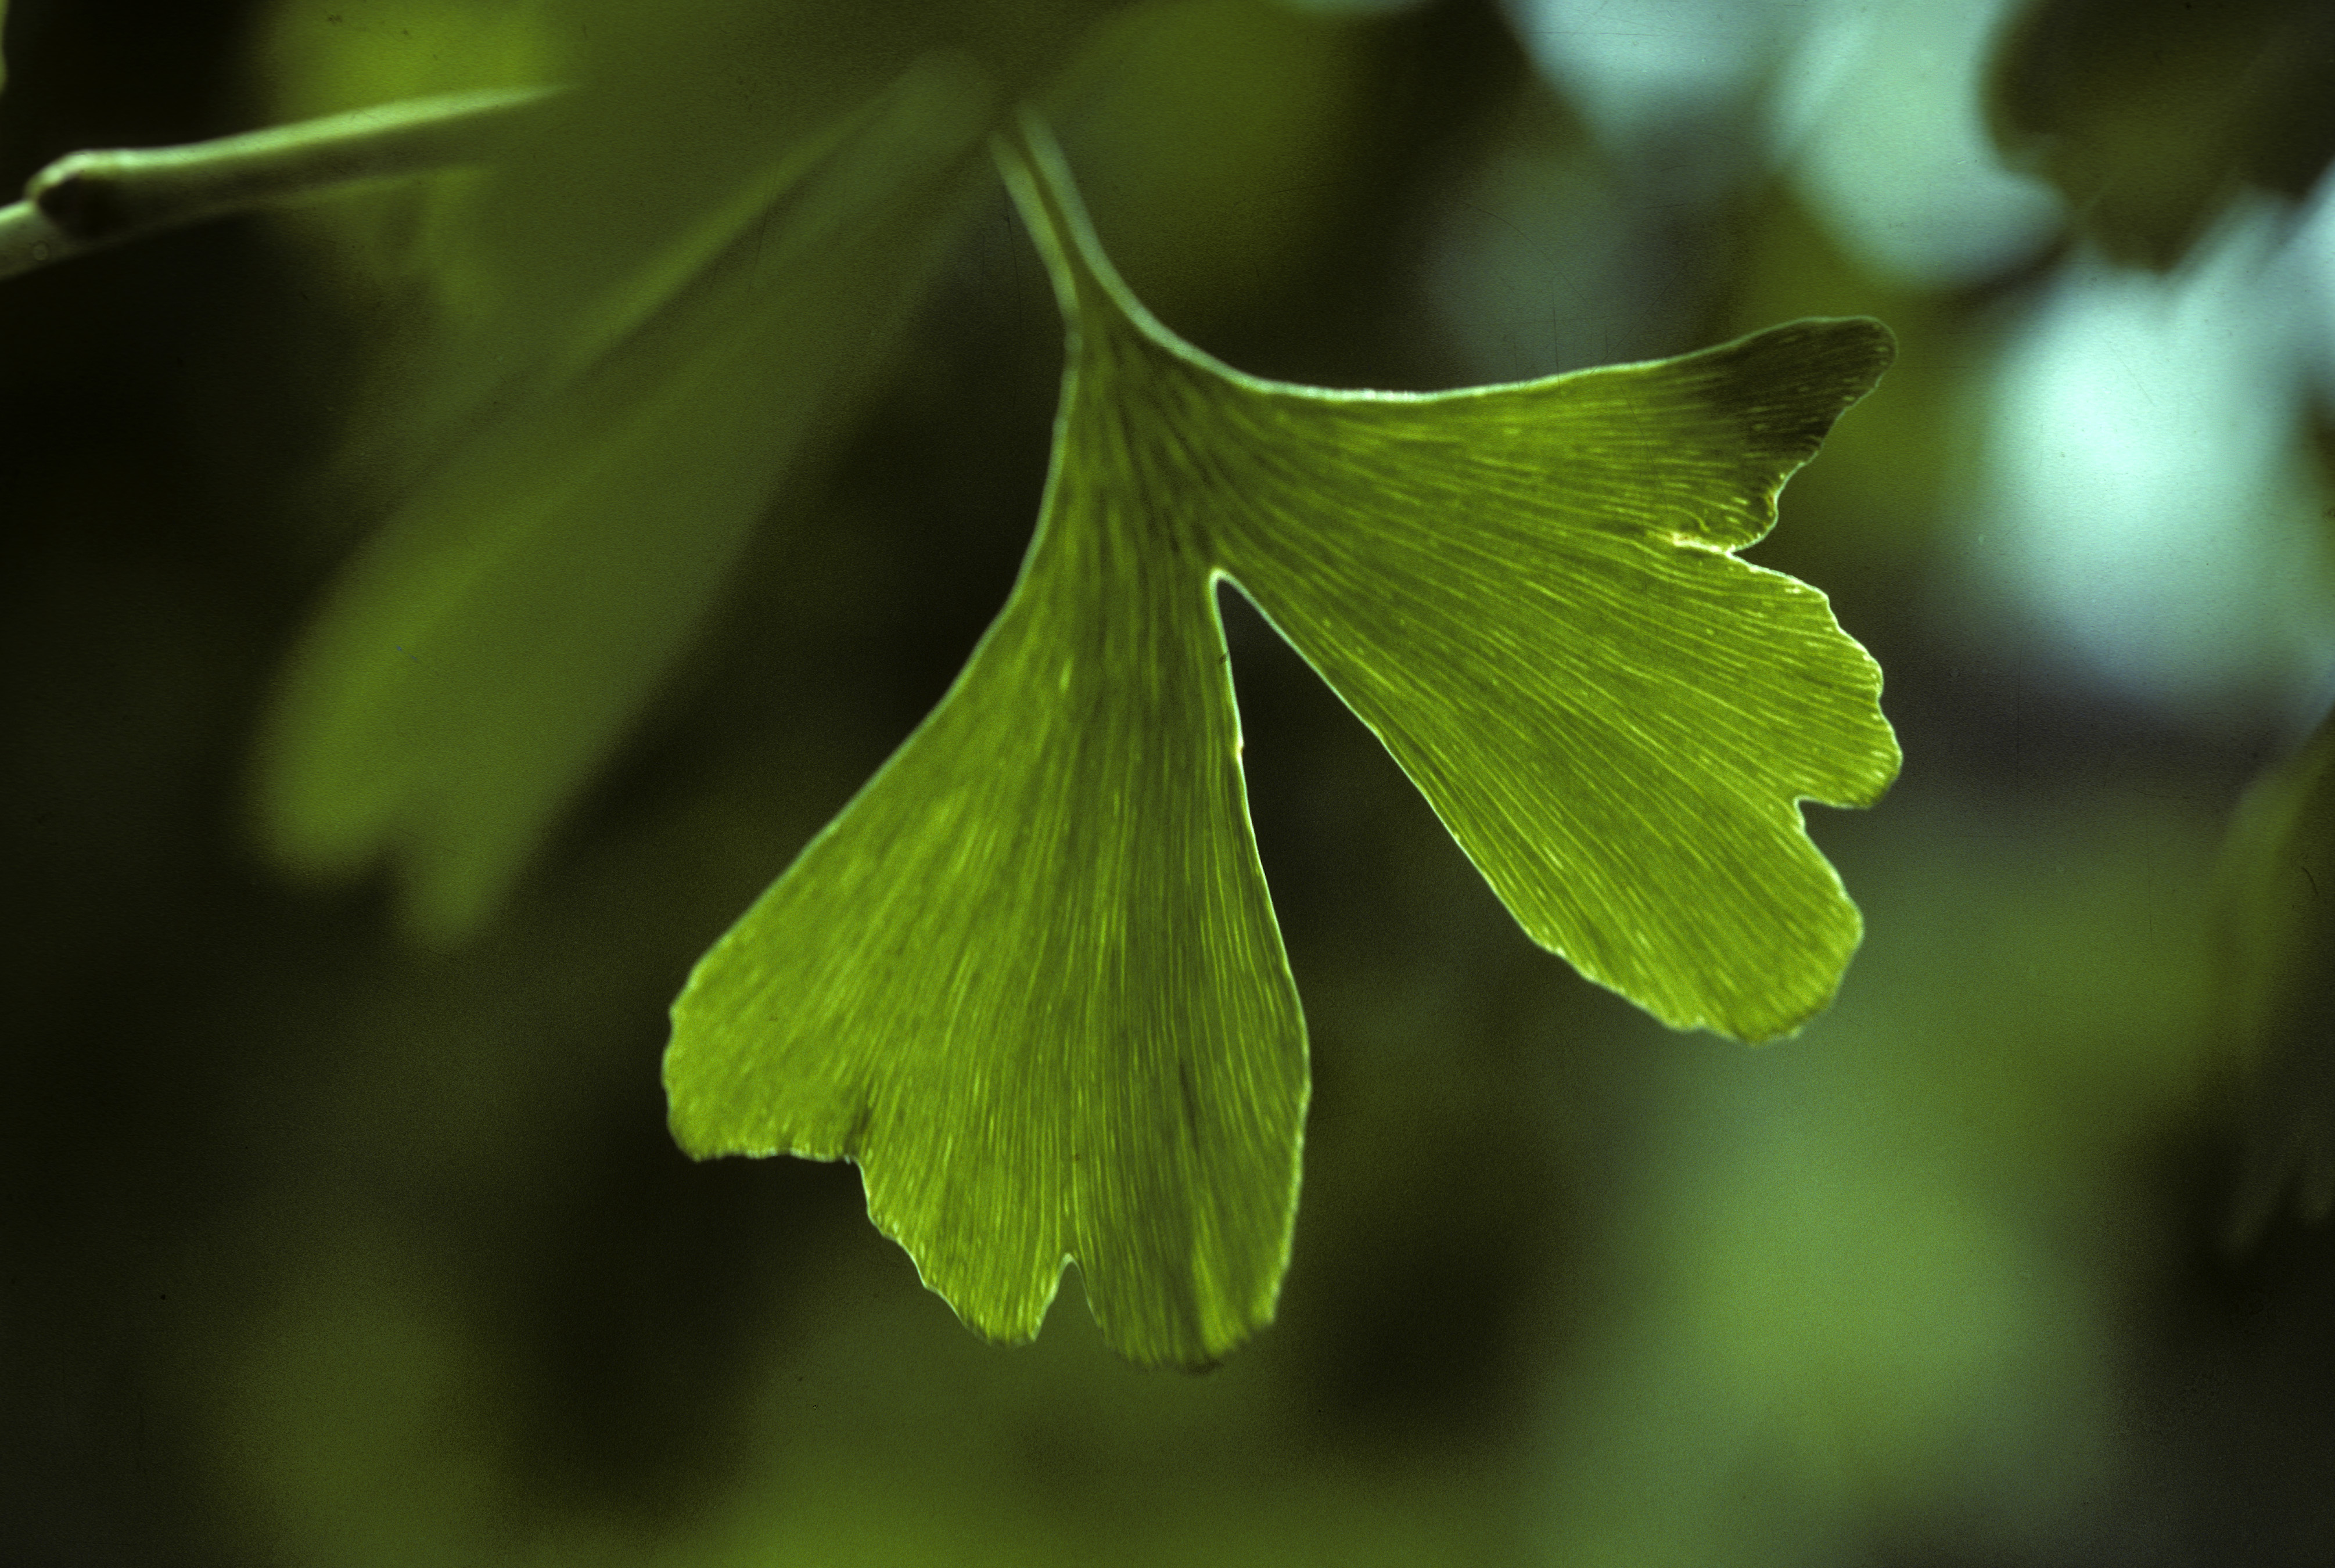 Gingko leaf, Ginkgo biloba